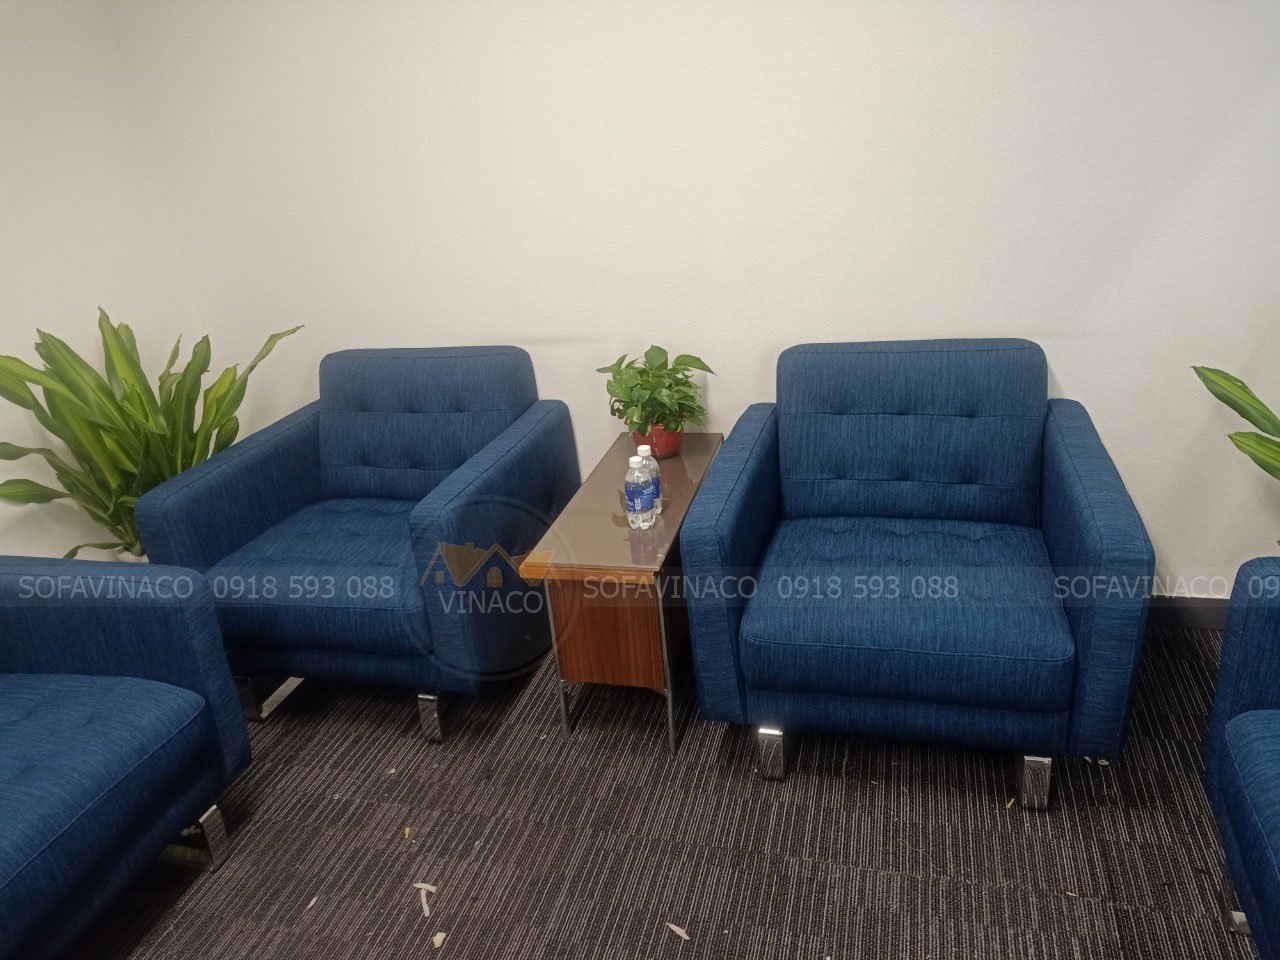 Bọc ghế sofa nỉ màu xanh dương cho khách tại Hoàng Cầu, Hà Nội